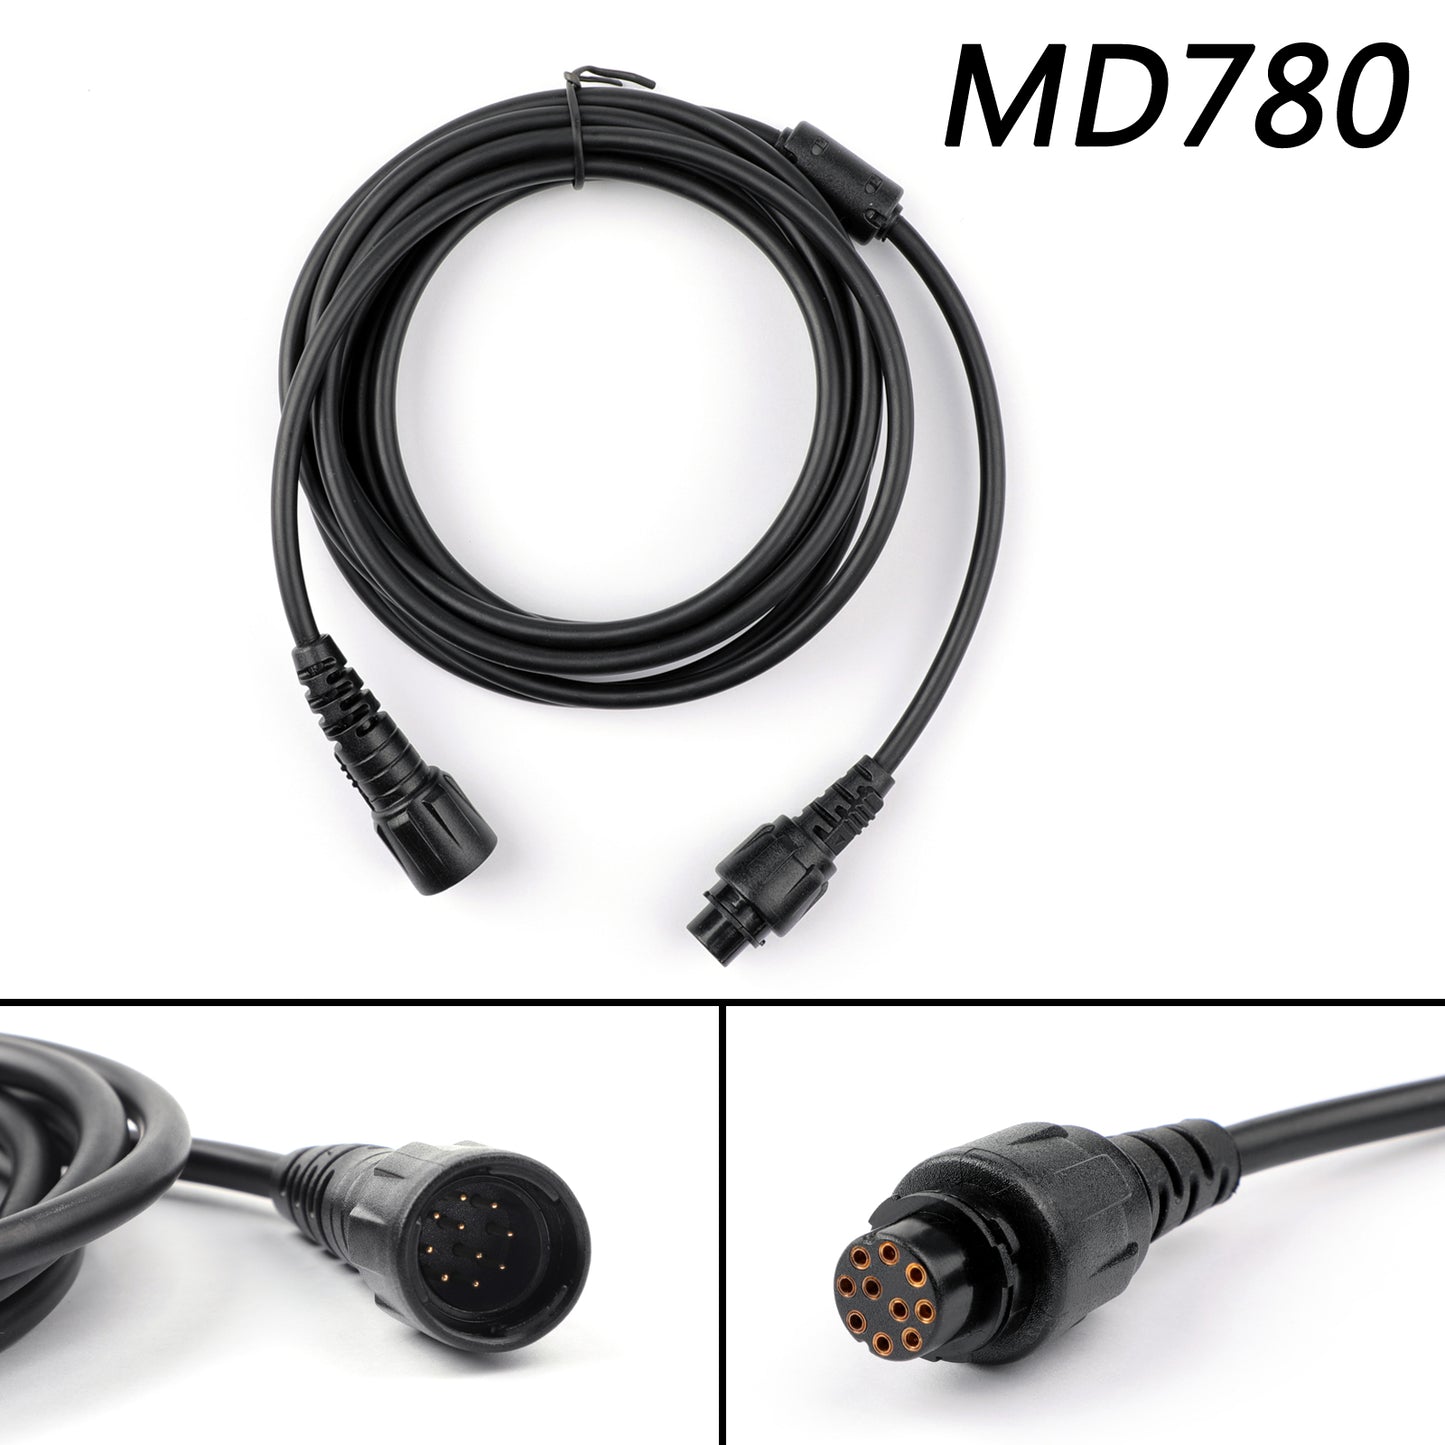 Auto Repeater Handmikrofon Verlängerungskabel 3M für Hytera MD780 MD650 RD980